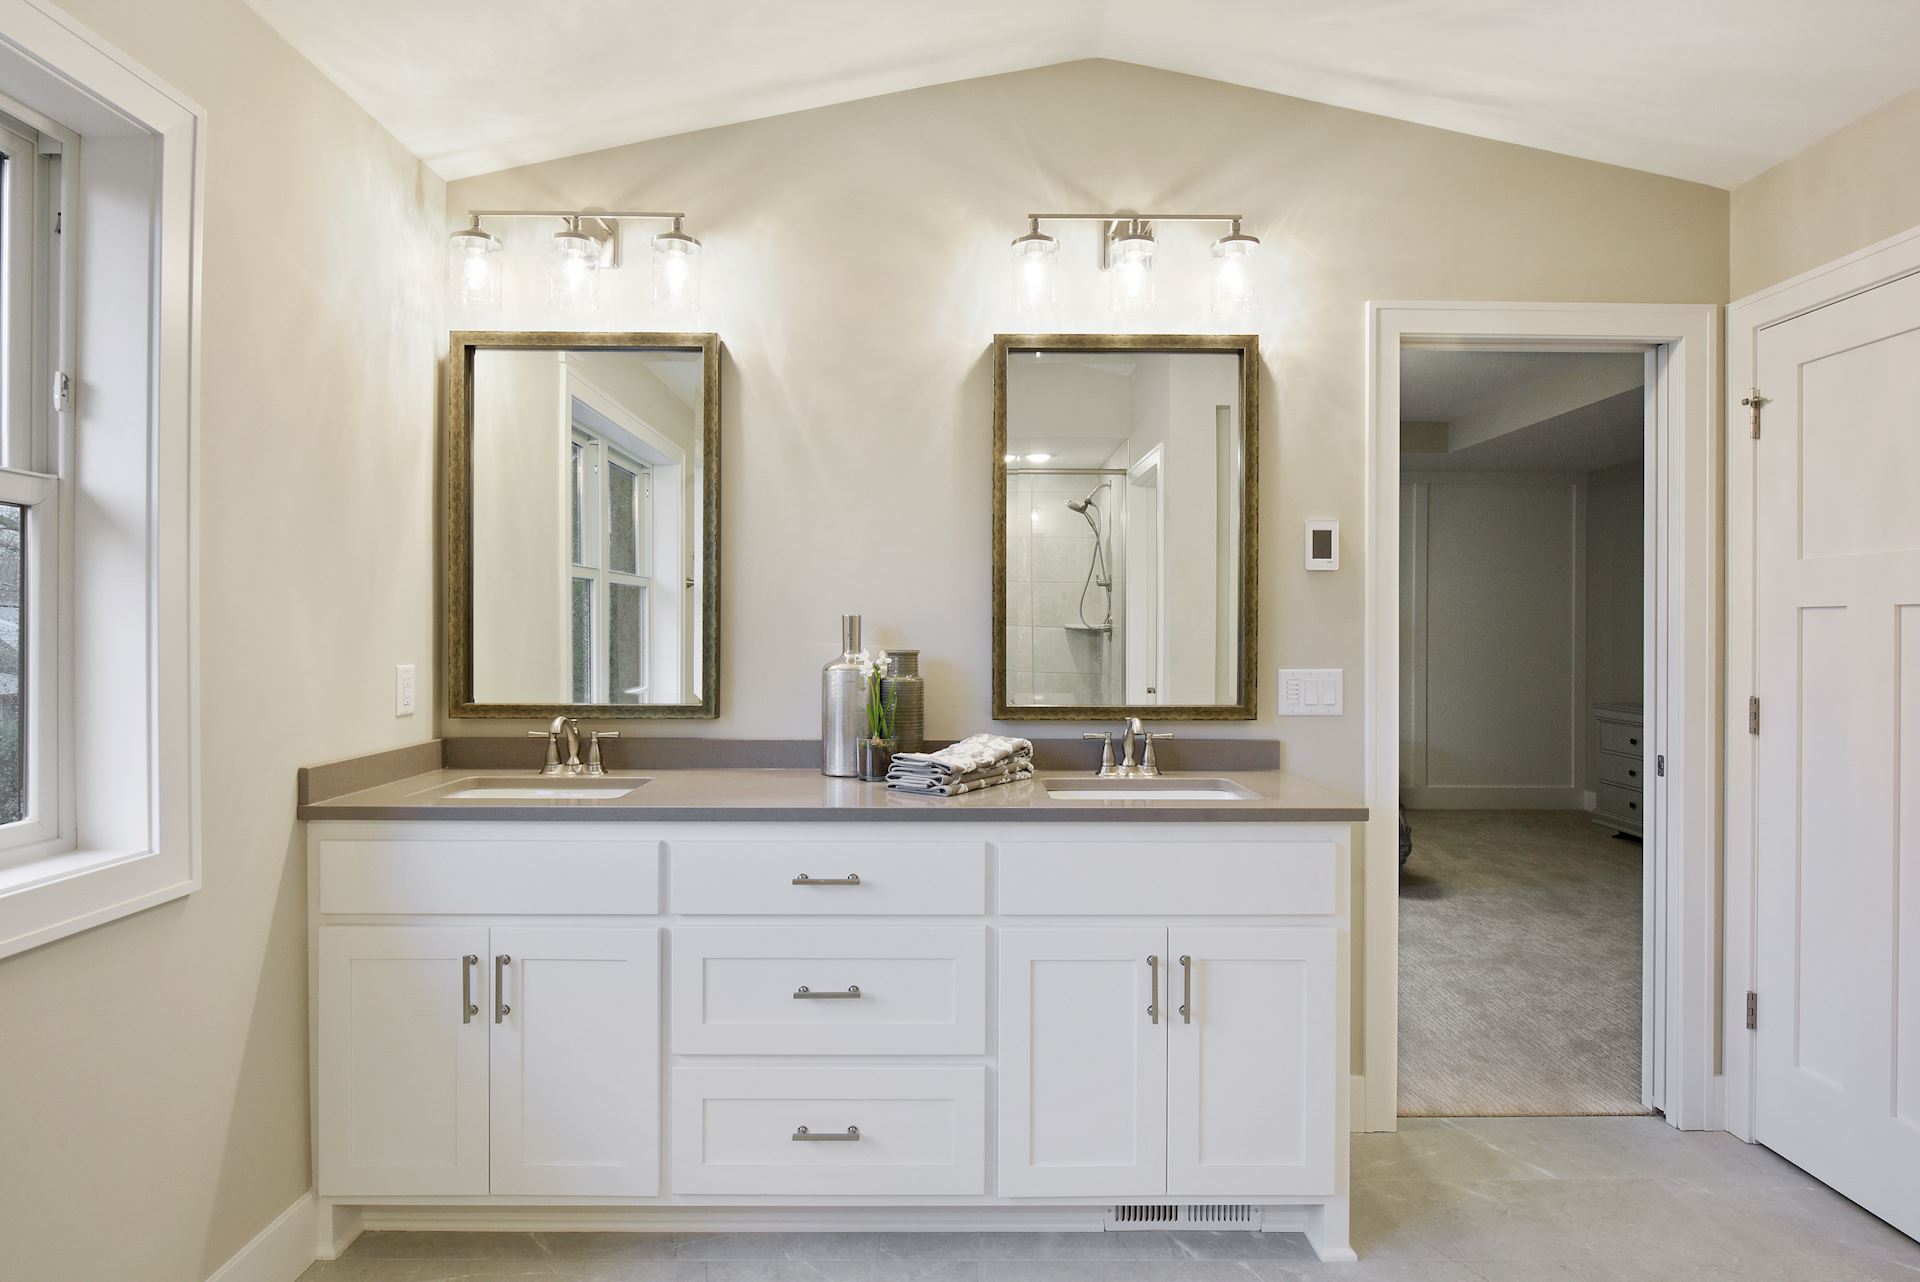 Master Suite Bathroom Dual Vanity